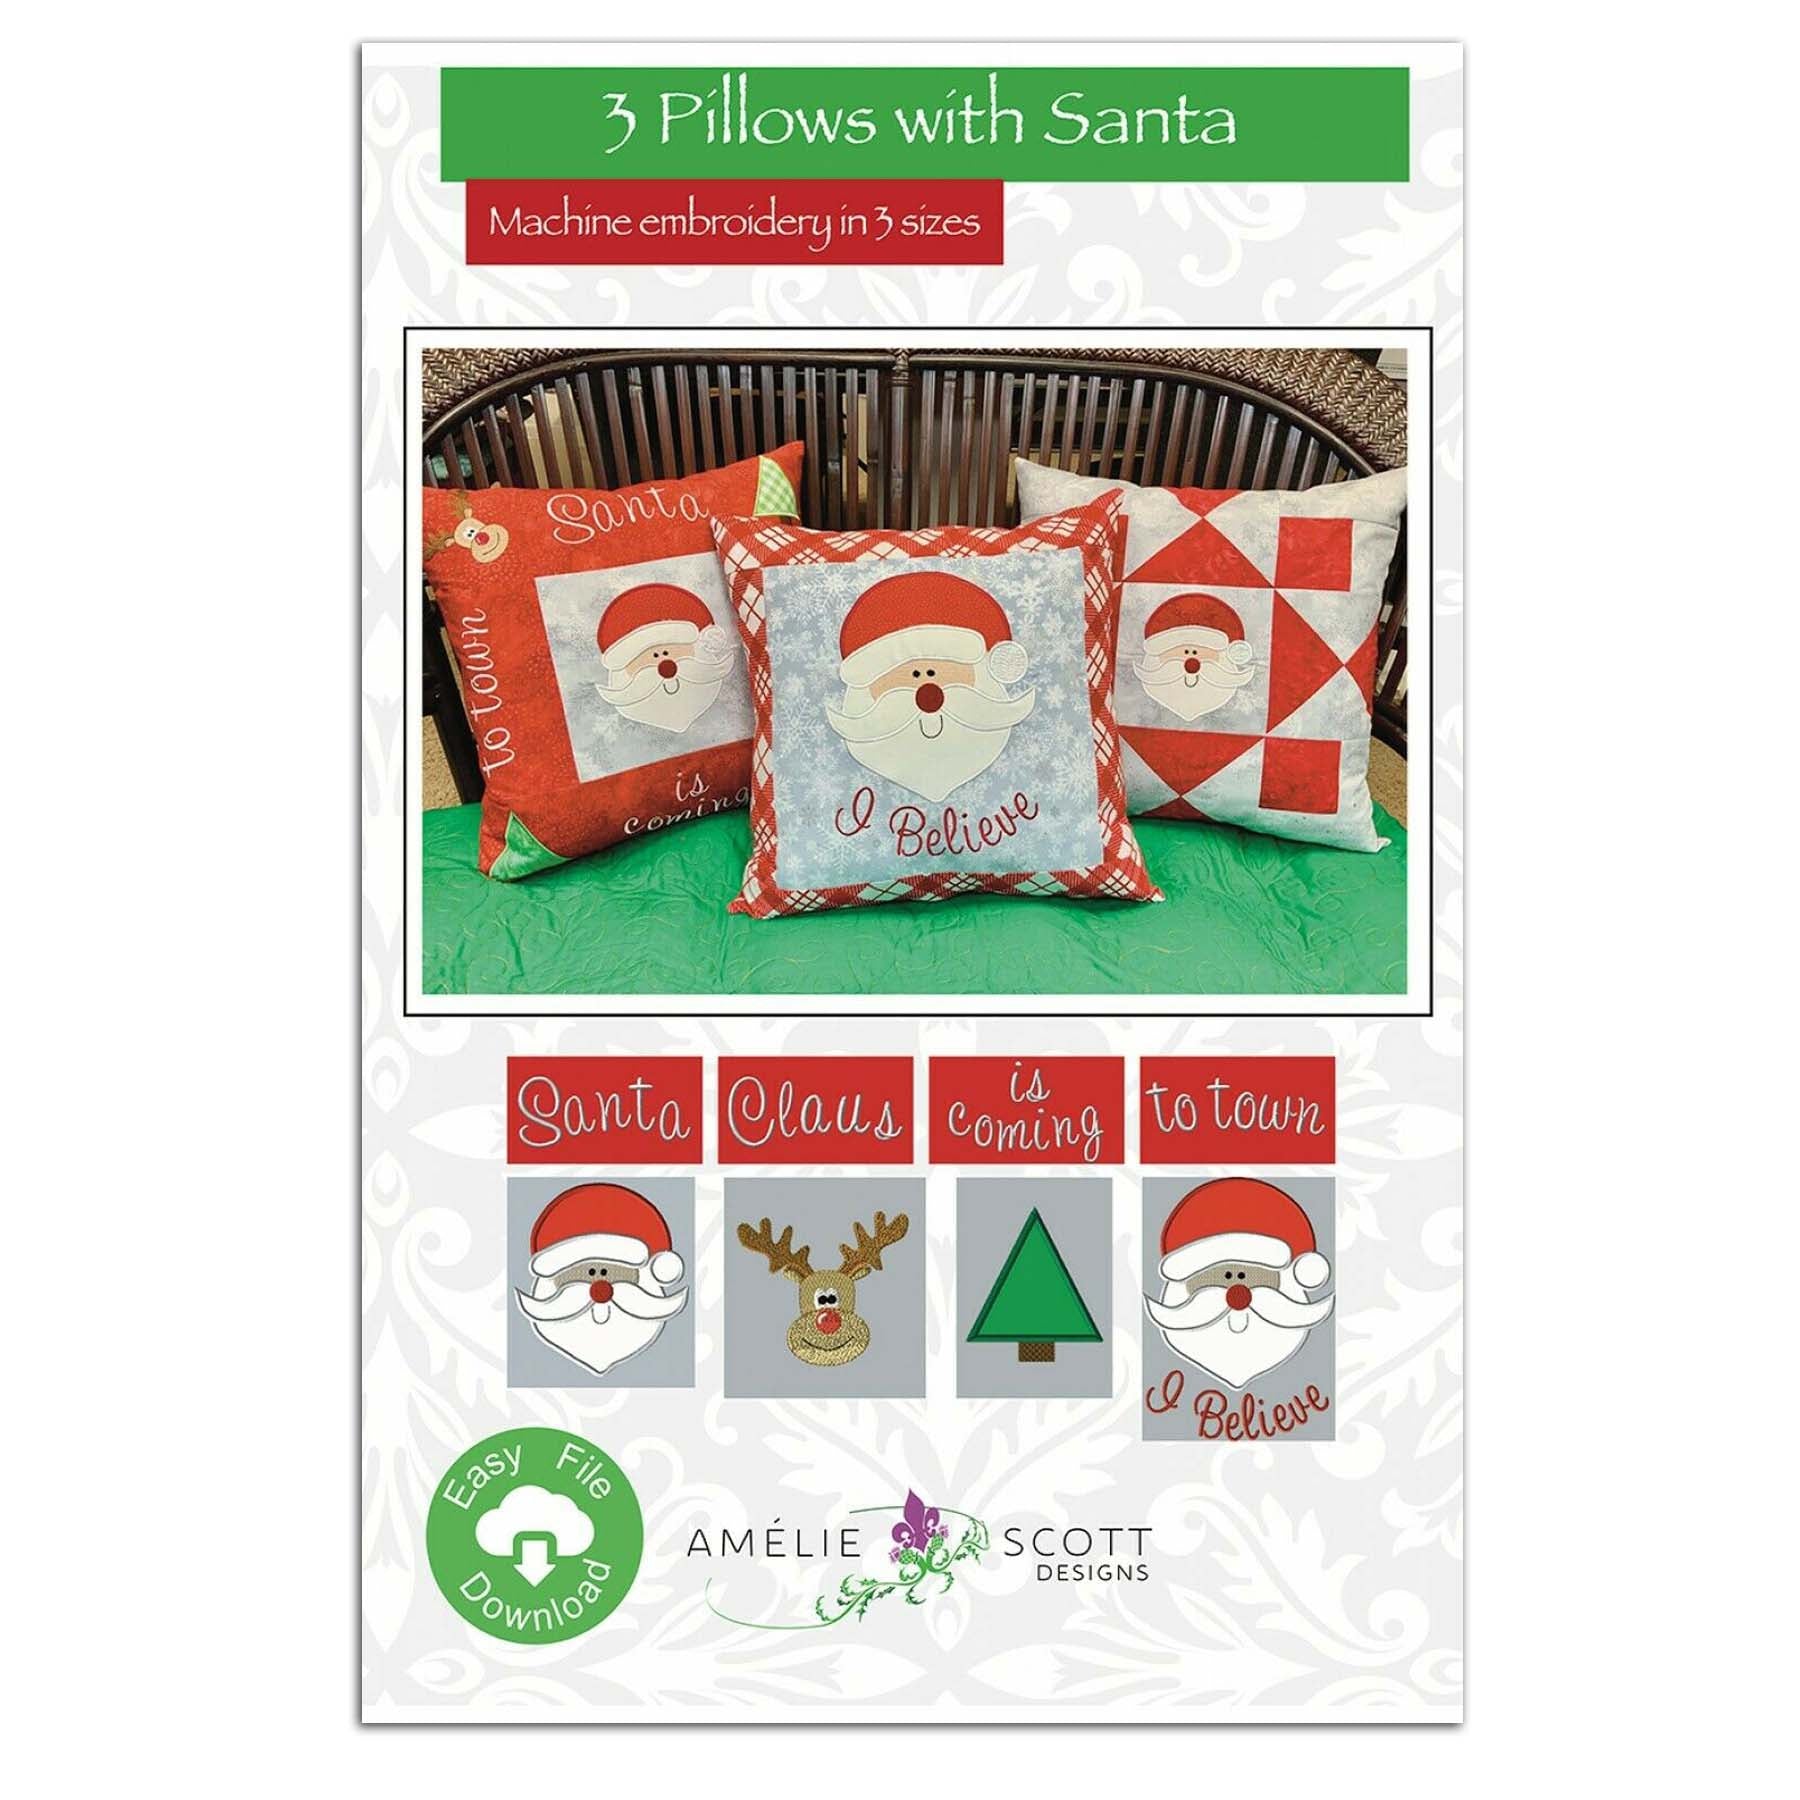 3 Pillows with Santa CD